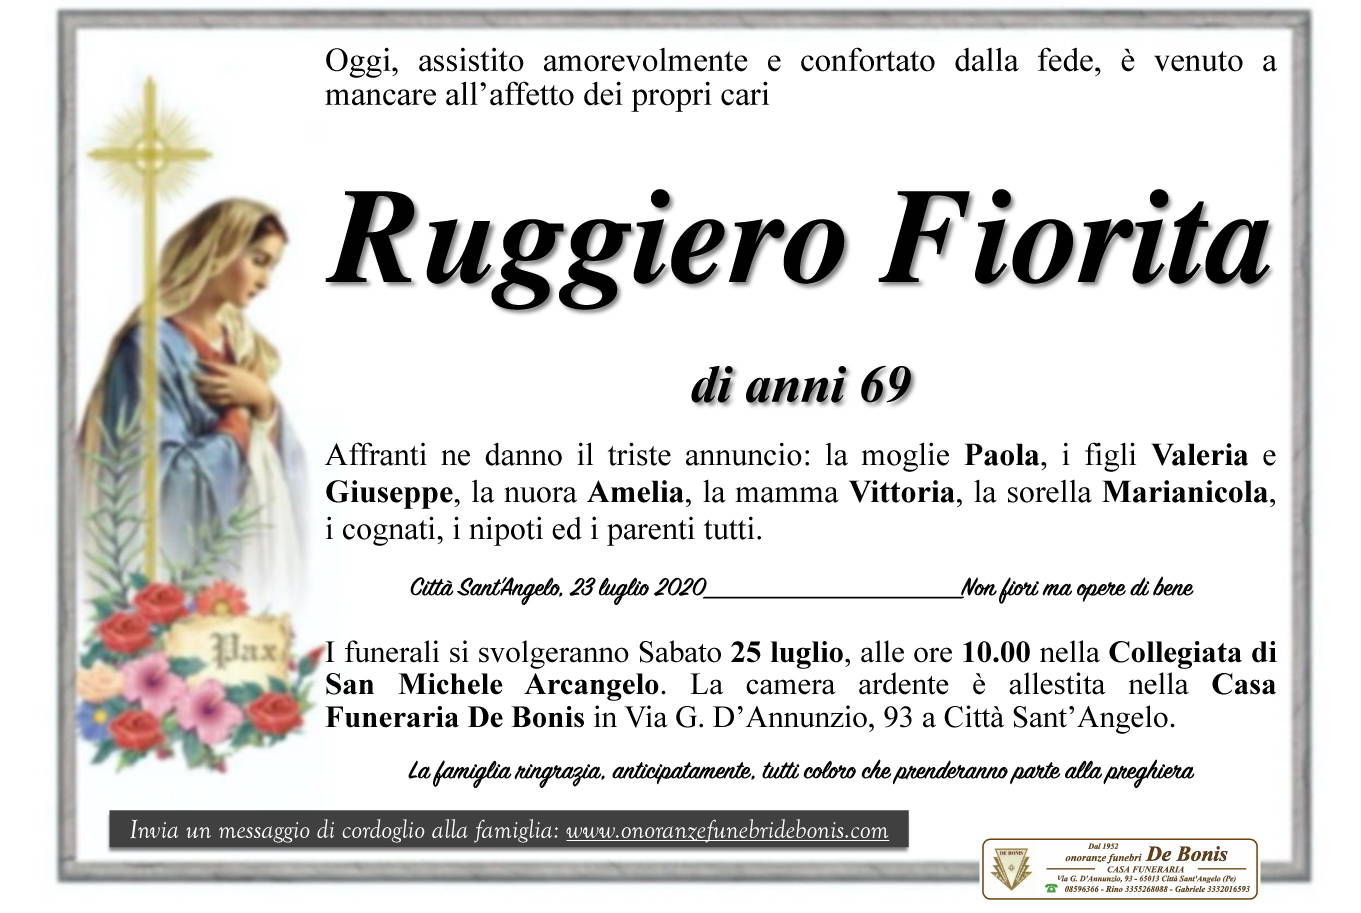 Ruggiero Fiorita